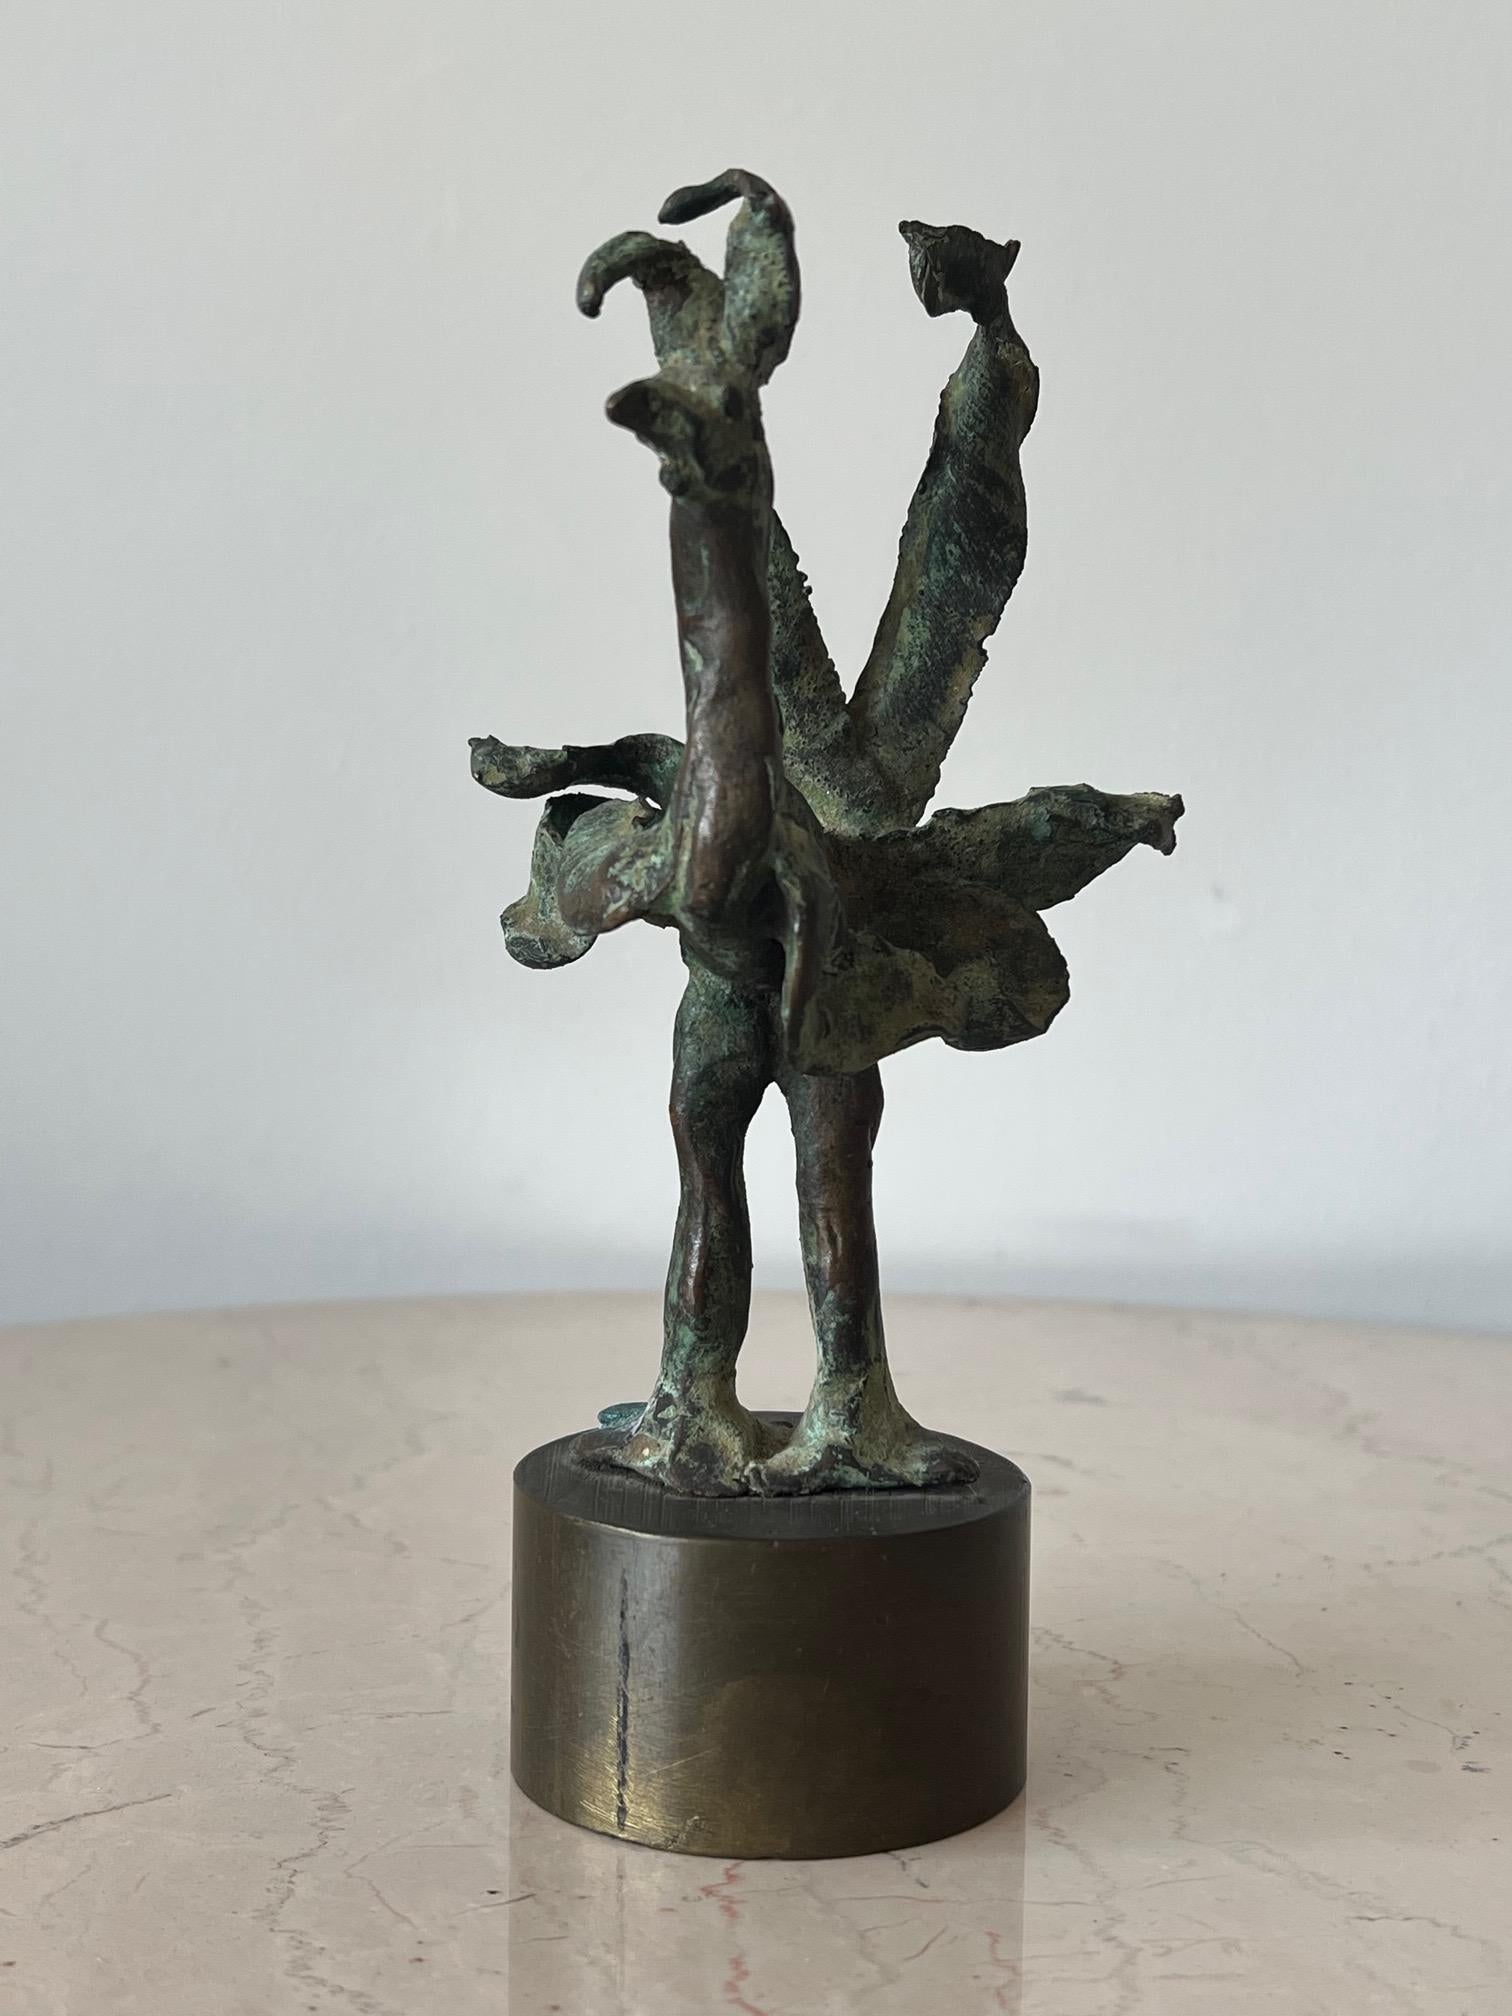 Un charmant coq en bronze, pièce unique de la sculptrice américaine Anne Van Kleeck.  Provenant de la succession de l'artiste. Une note sur l'artiste : Anne Van Kleeck était principalement connue pour ses œuvres en bronze coulé et en céramique. Elle